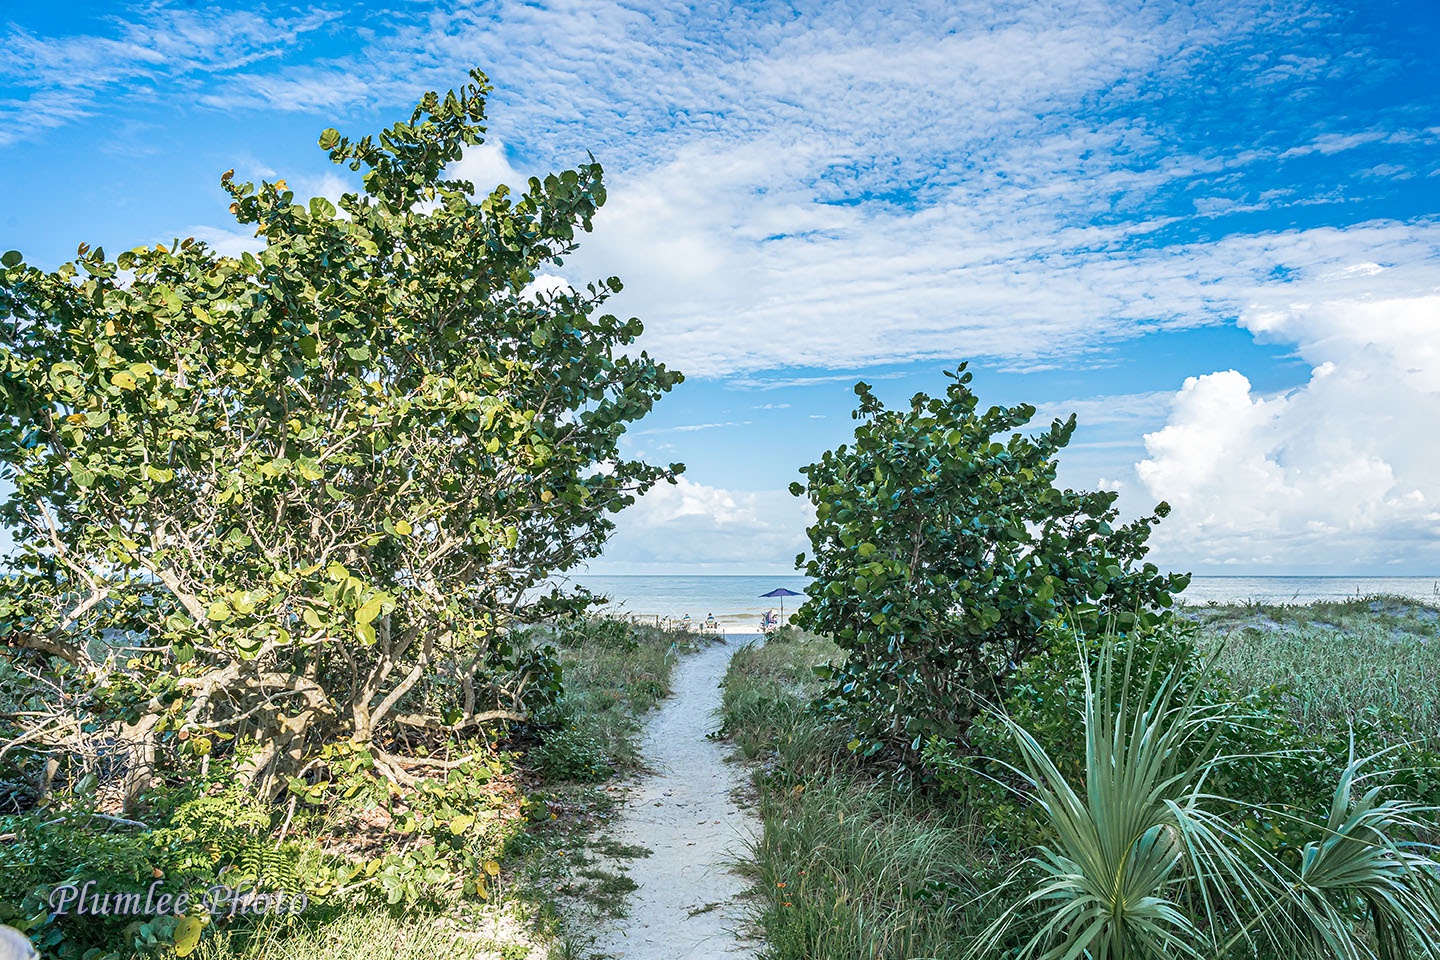 Beach path through natural green setting.